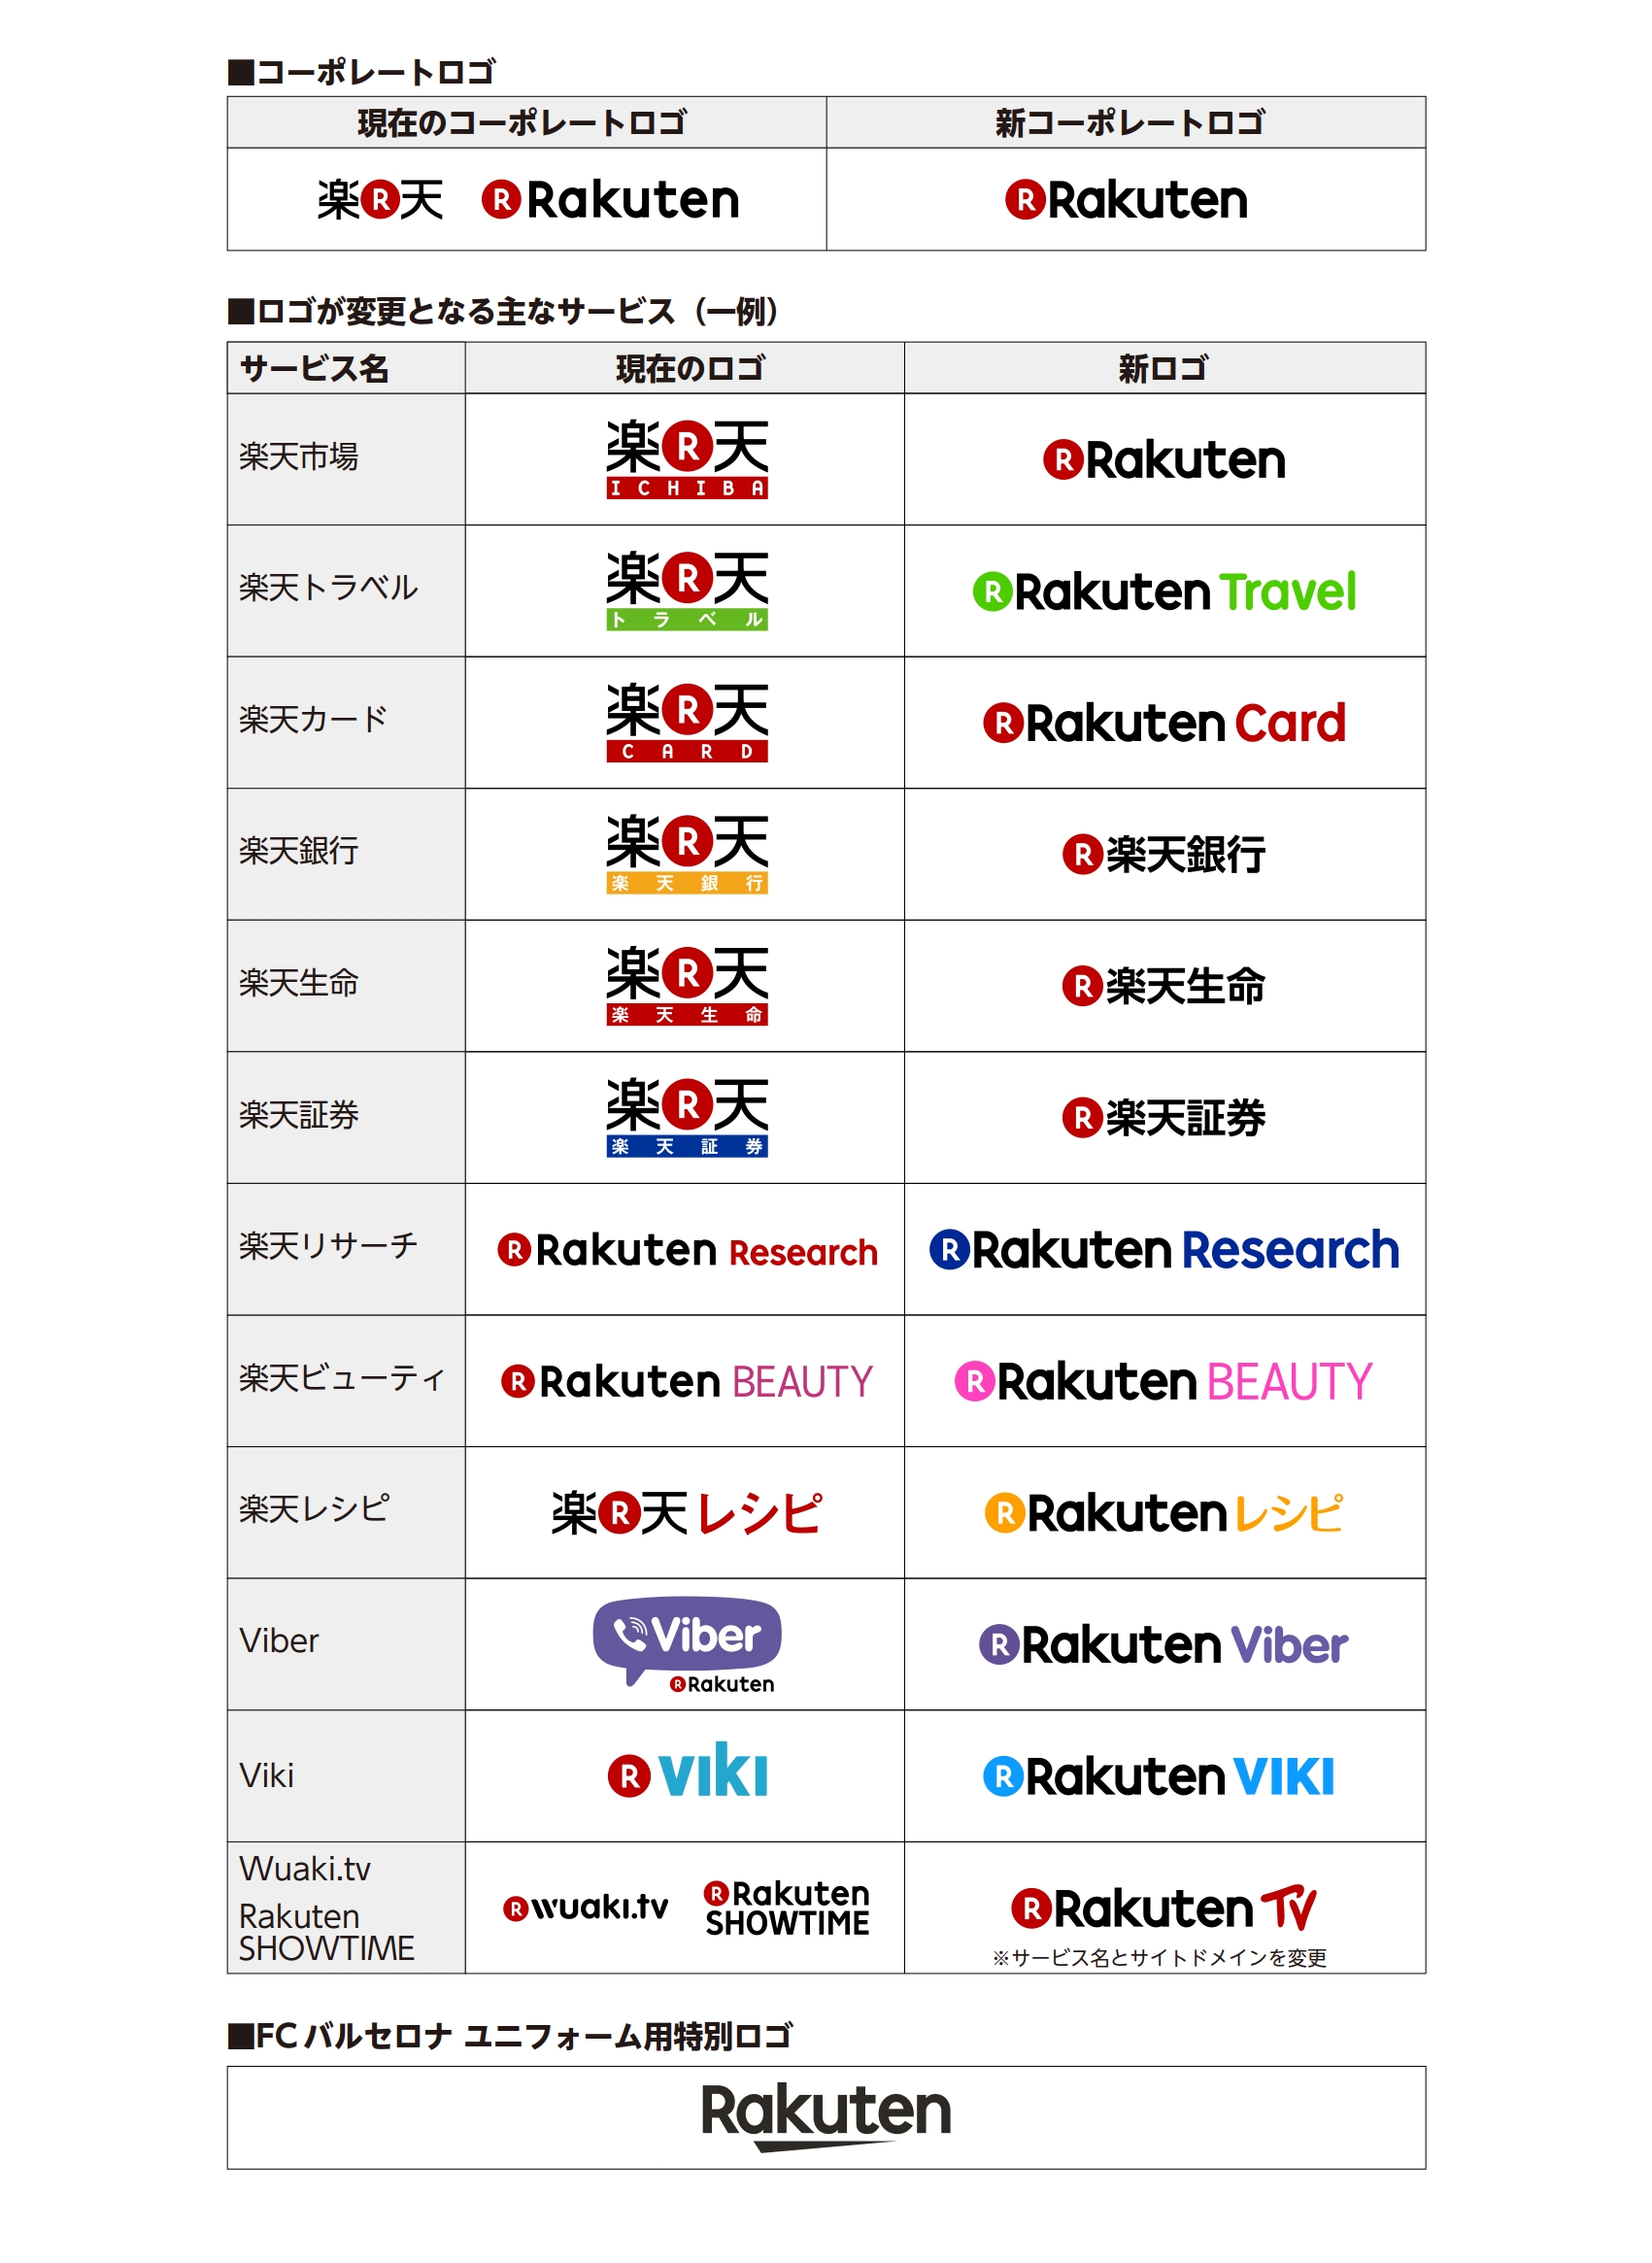 楽天グループ株式会社 楽天グループ グローバルで Rakuten ブランドを強化 ニュース